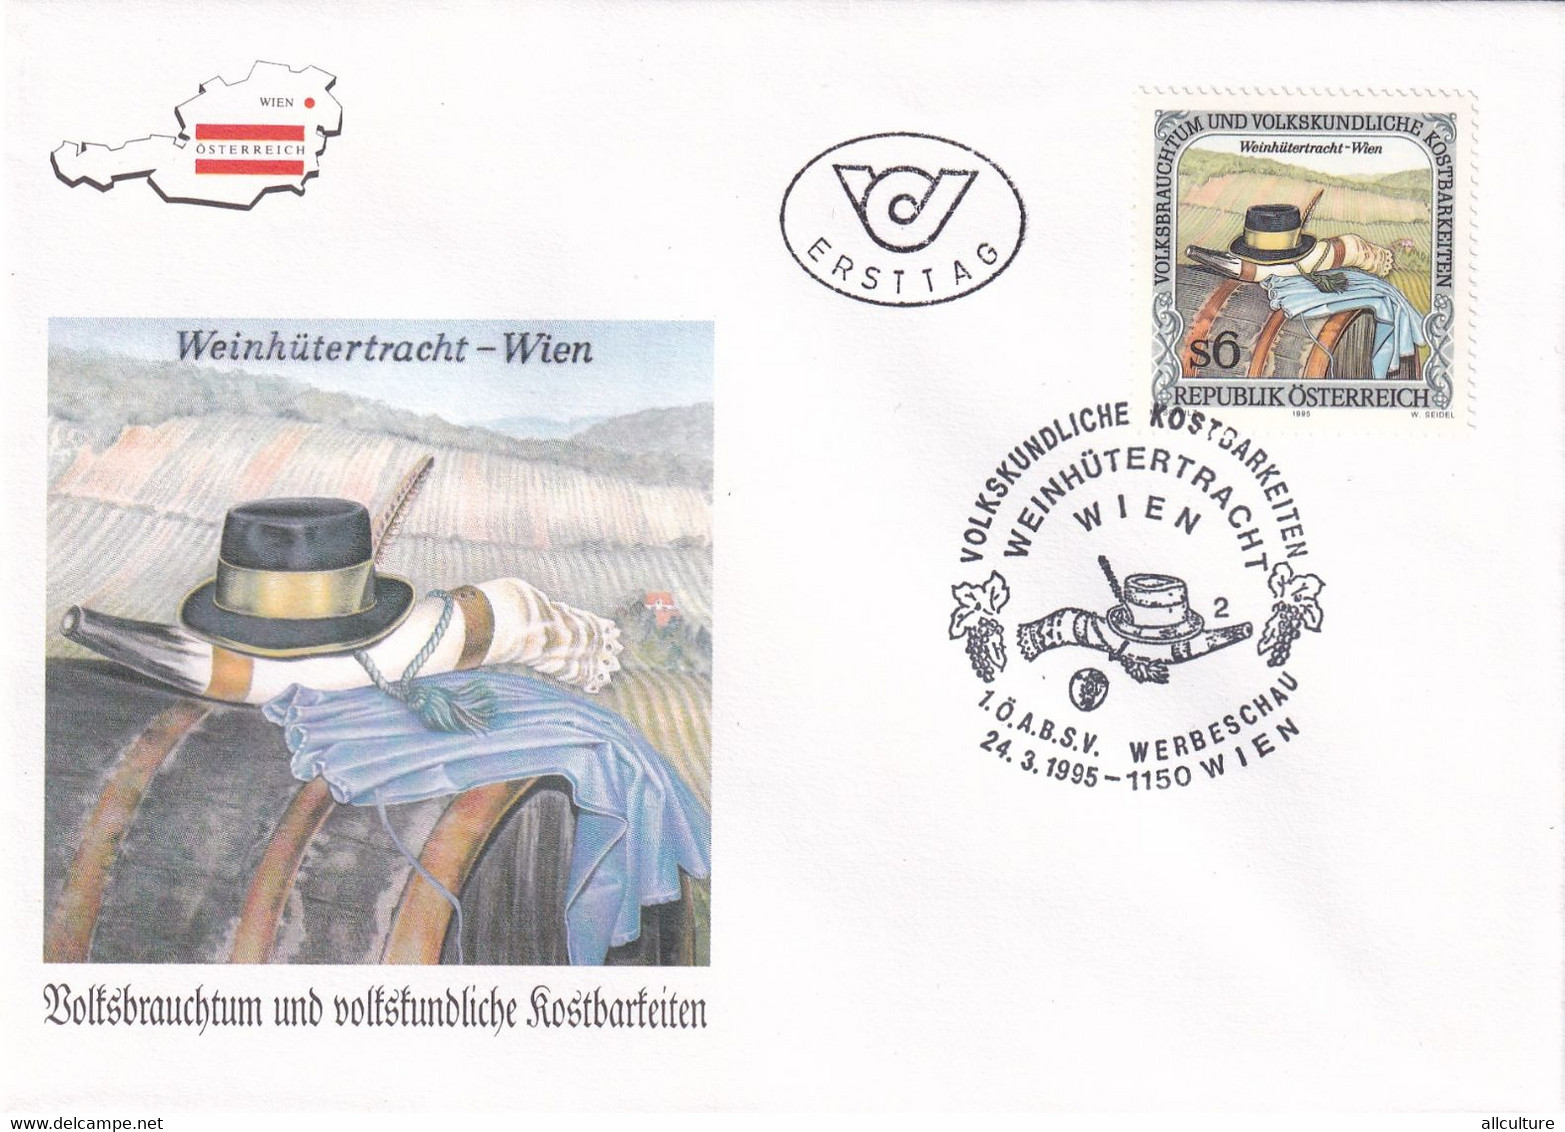 A8187 - WEINHUTERTRACHT, WEIN, ERSTTAG 1995  REPUBLIC OESTERREICH USED STAMP ON COVER AUSTRIA - Cartas & Documentos